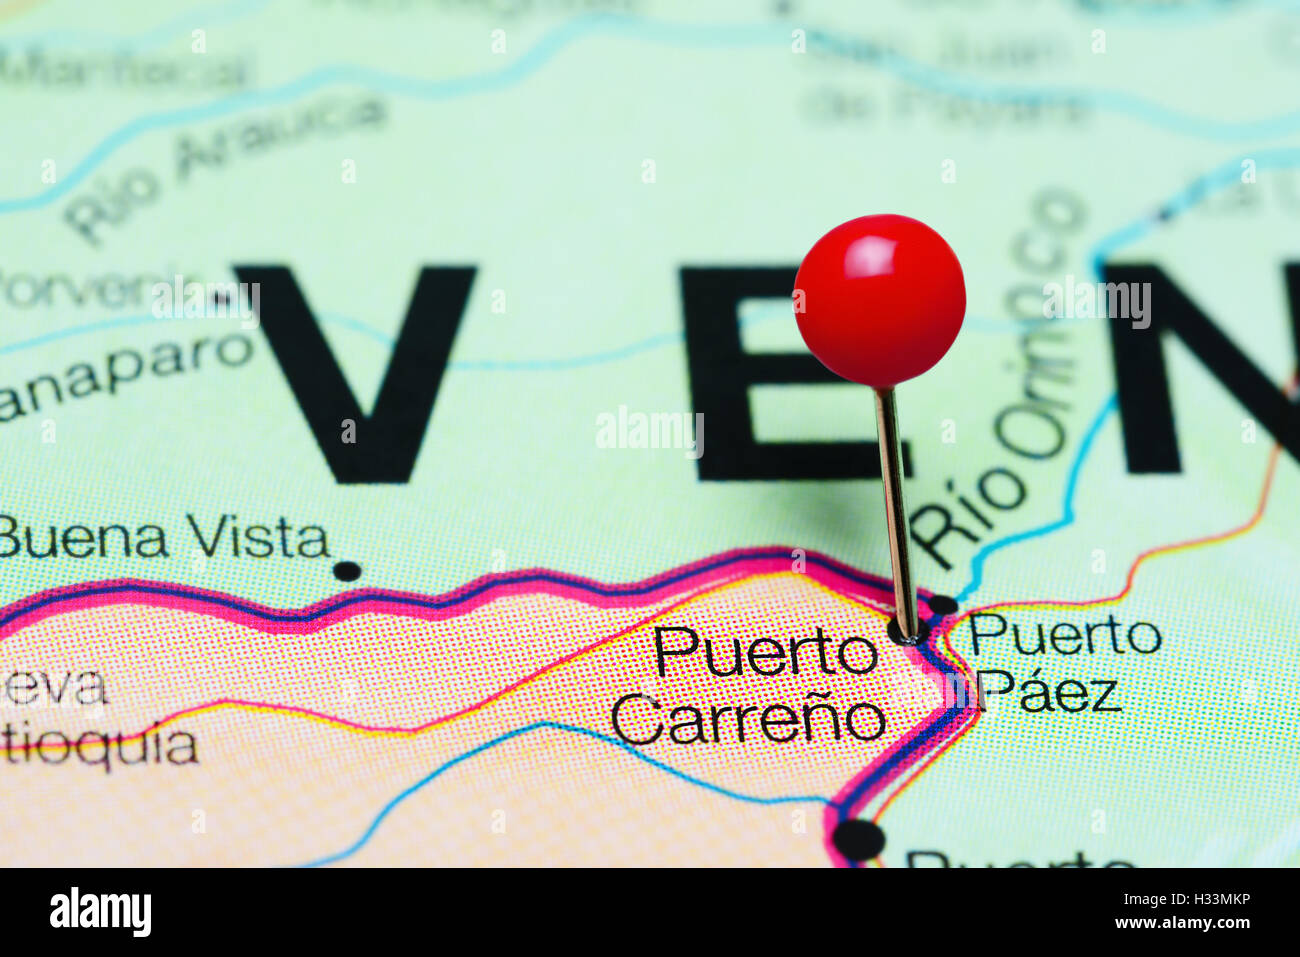 Puerto Carreño anclado en un mapa de Colombia Fotografía de stock - Alamy